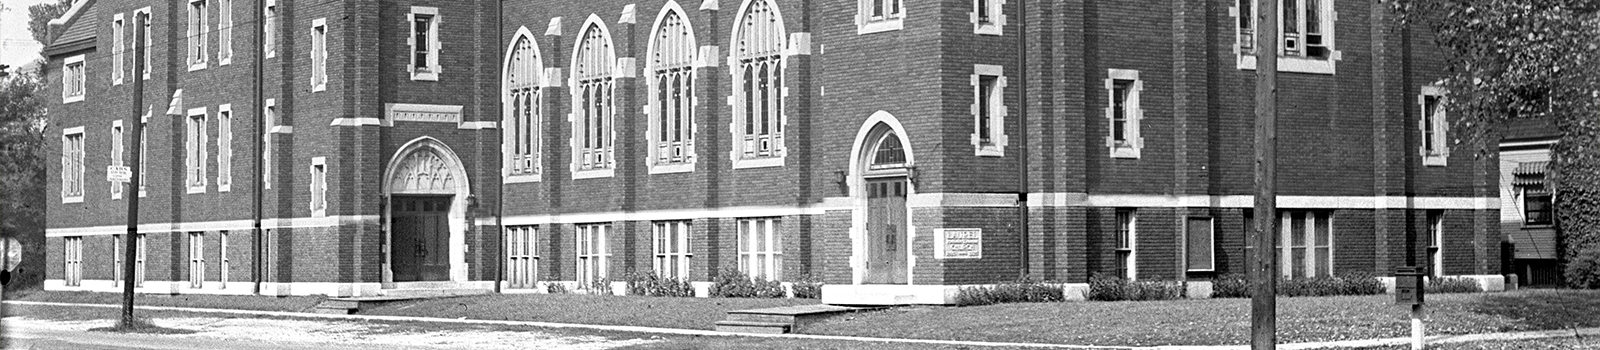 exterior view of laurel united methodist church circa 1928